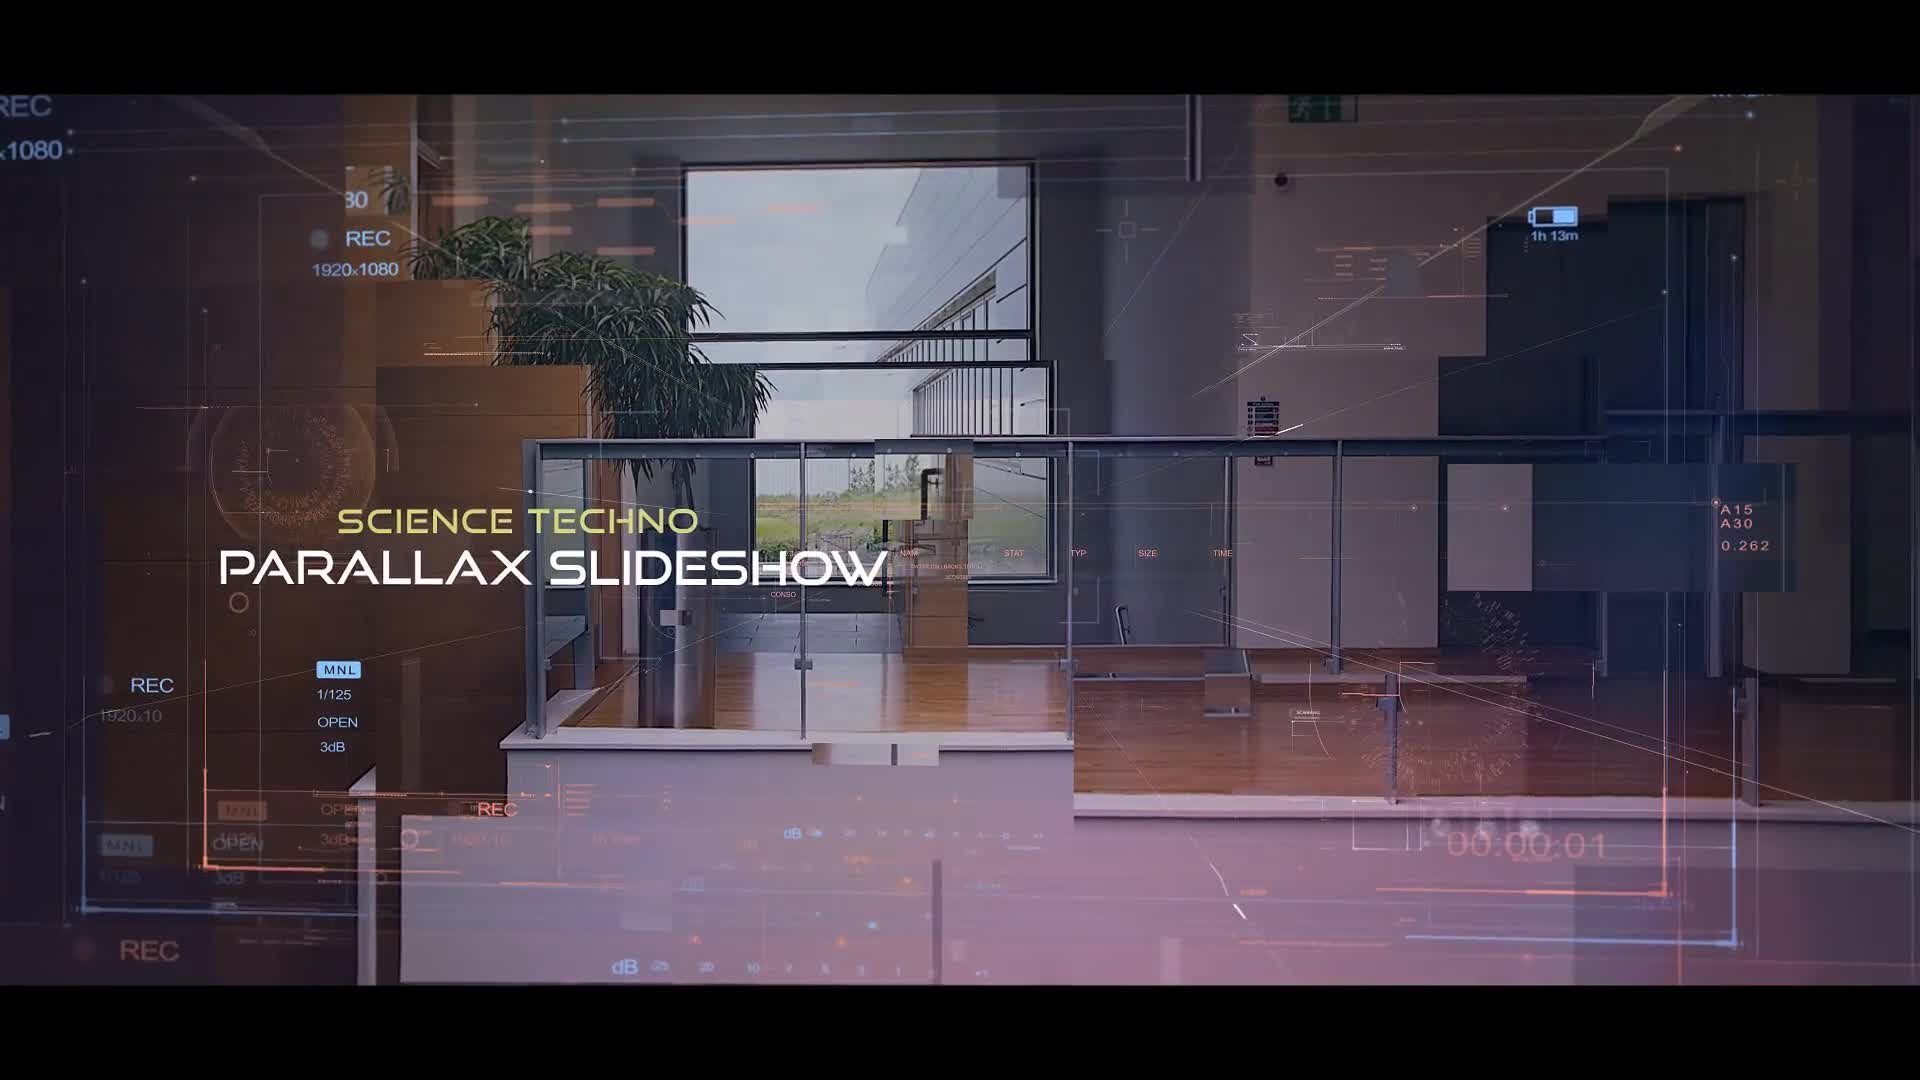 Science Techno Parallax Slideshow Videohive 27594850 Premiere Pro Image 1